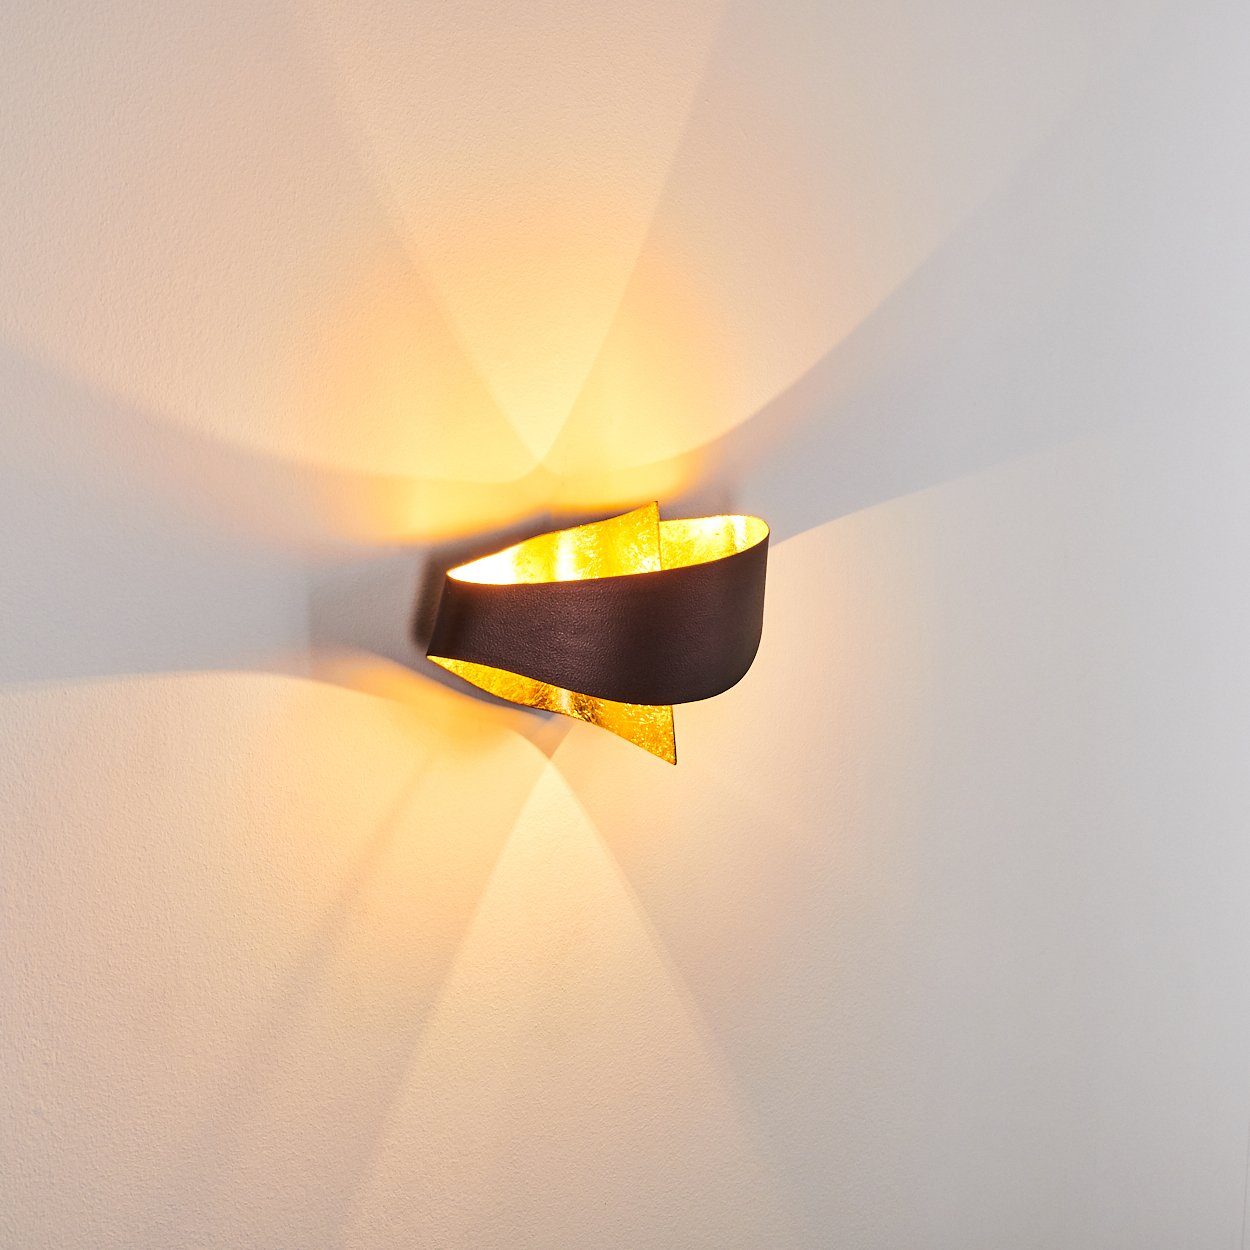 mit Down-Effekt, Braun/Gold, ohne Lichteffekt & mit Wandlampe in hofstein aus moderne Metall Zimmerlampe Wandleuchte »Aschi« 2xG9, Up Leuchtmittel,